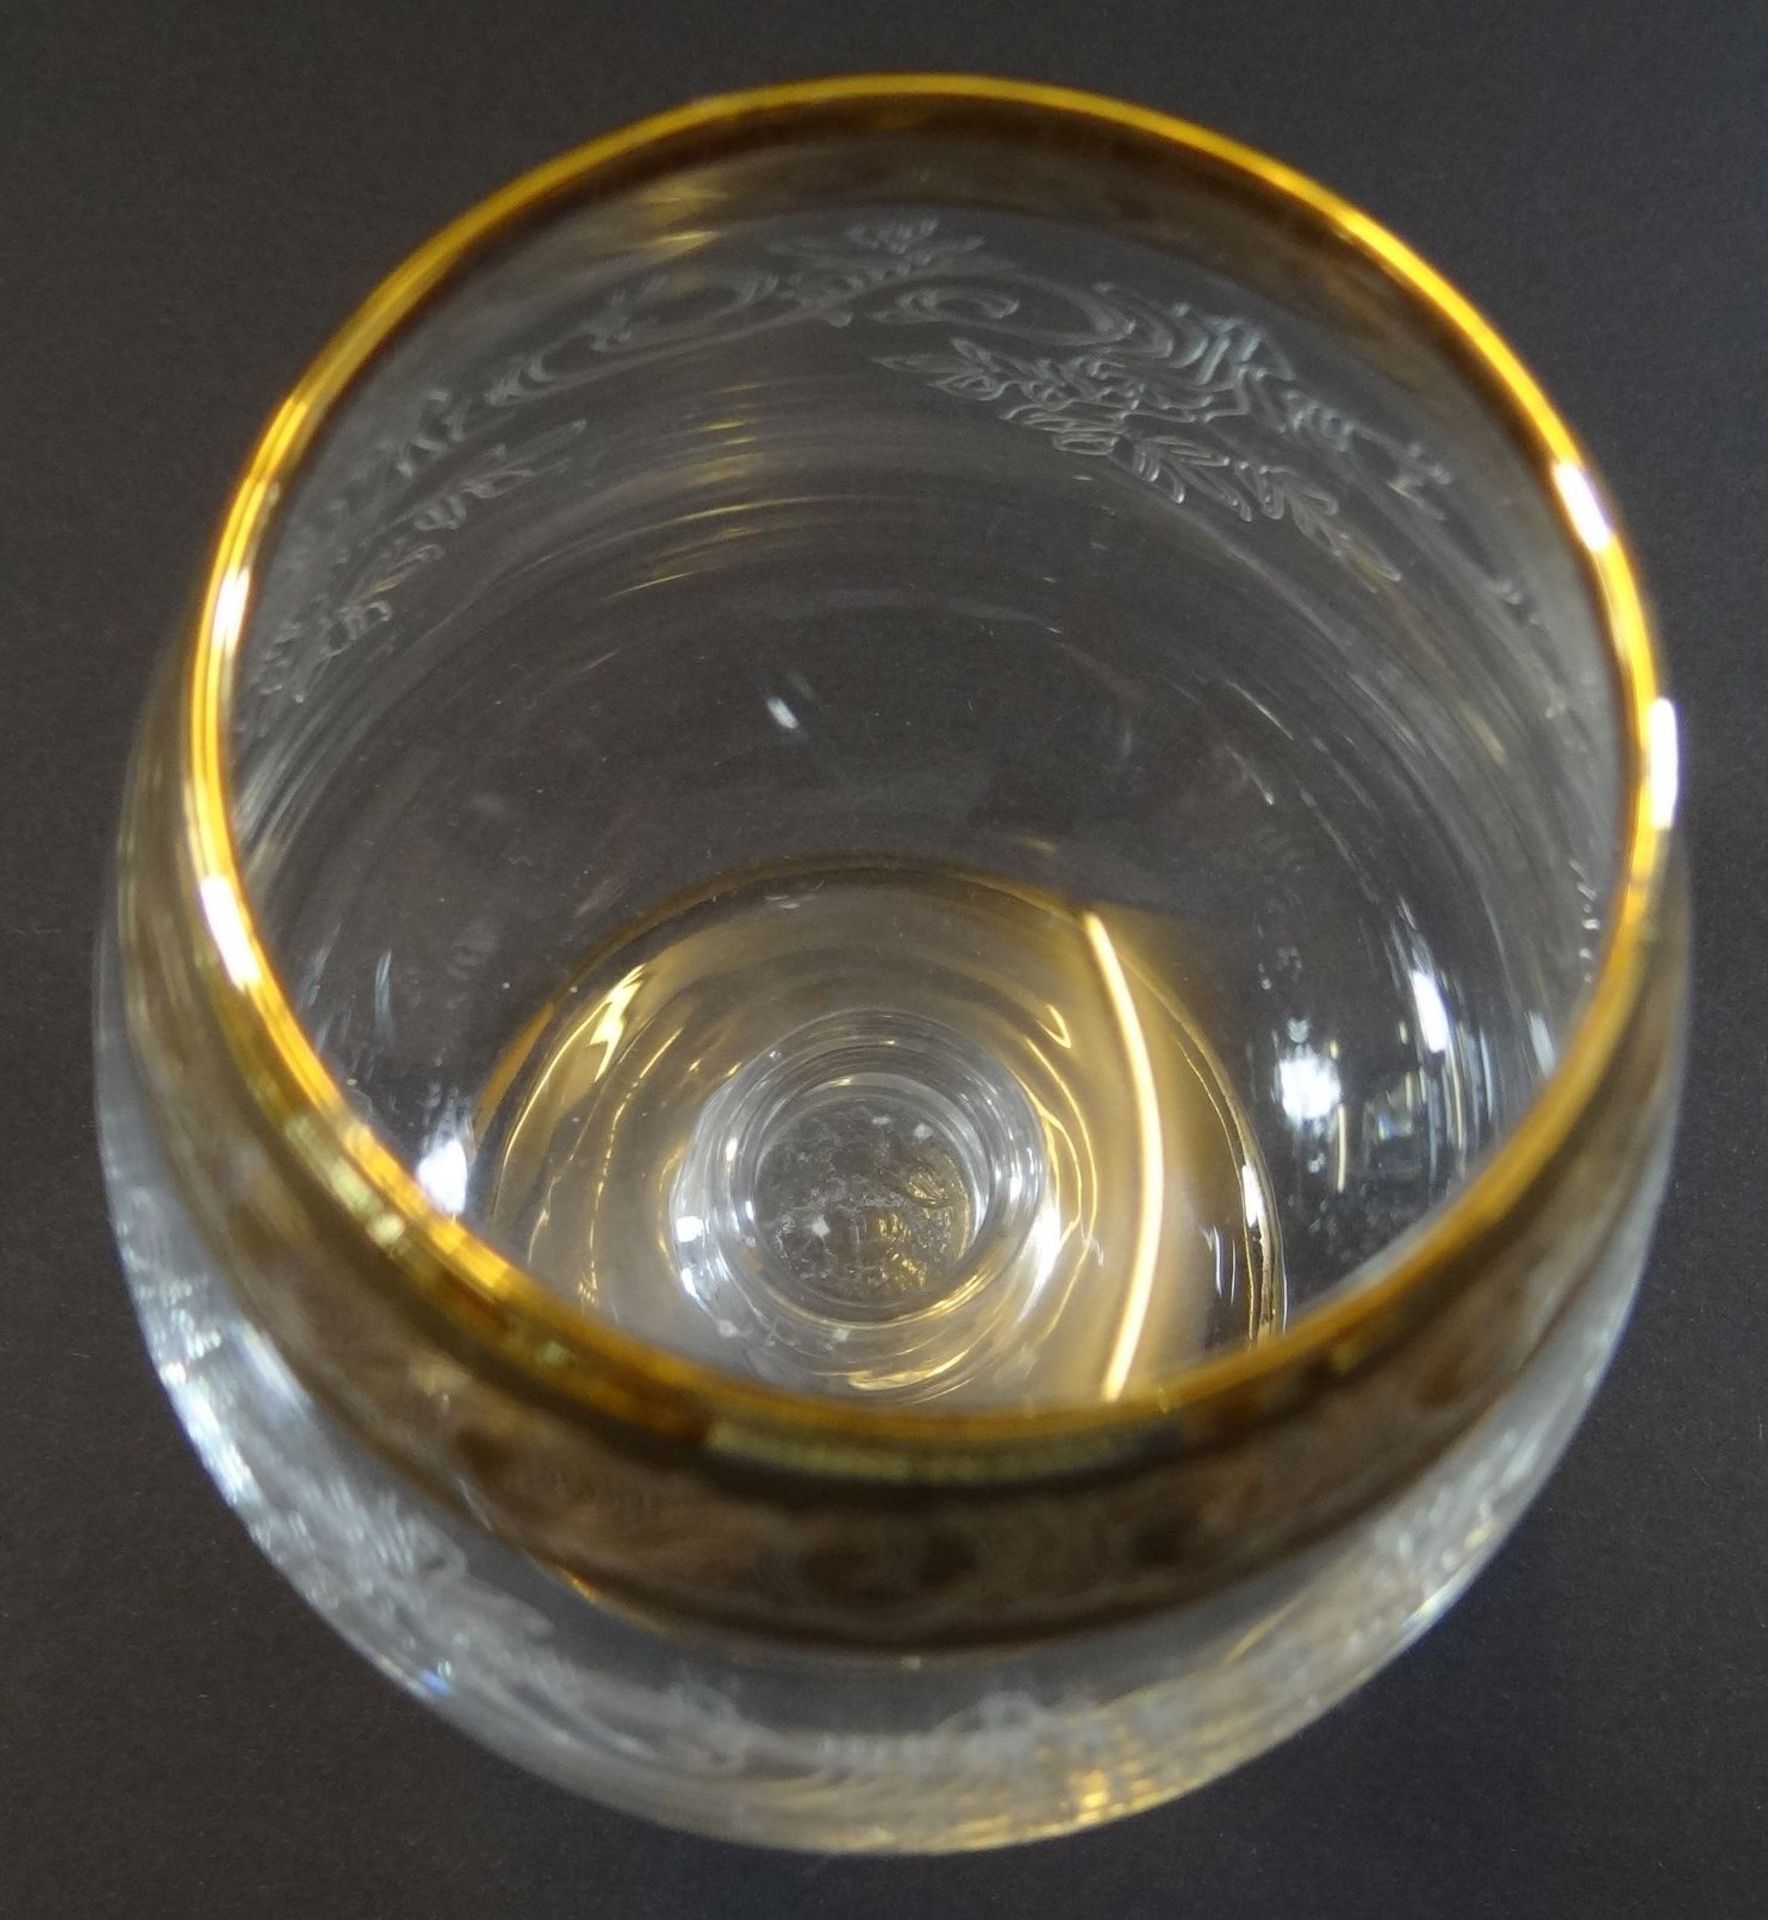 58 tg. Gläsersatz mit Golddekor, Handarbeit, H-max 16 cm, min. 6 cm, bei einigen Golddekor berieben - Bild 3 aus 16